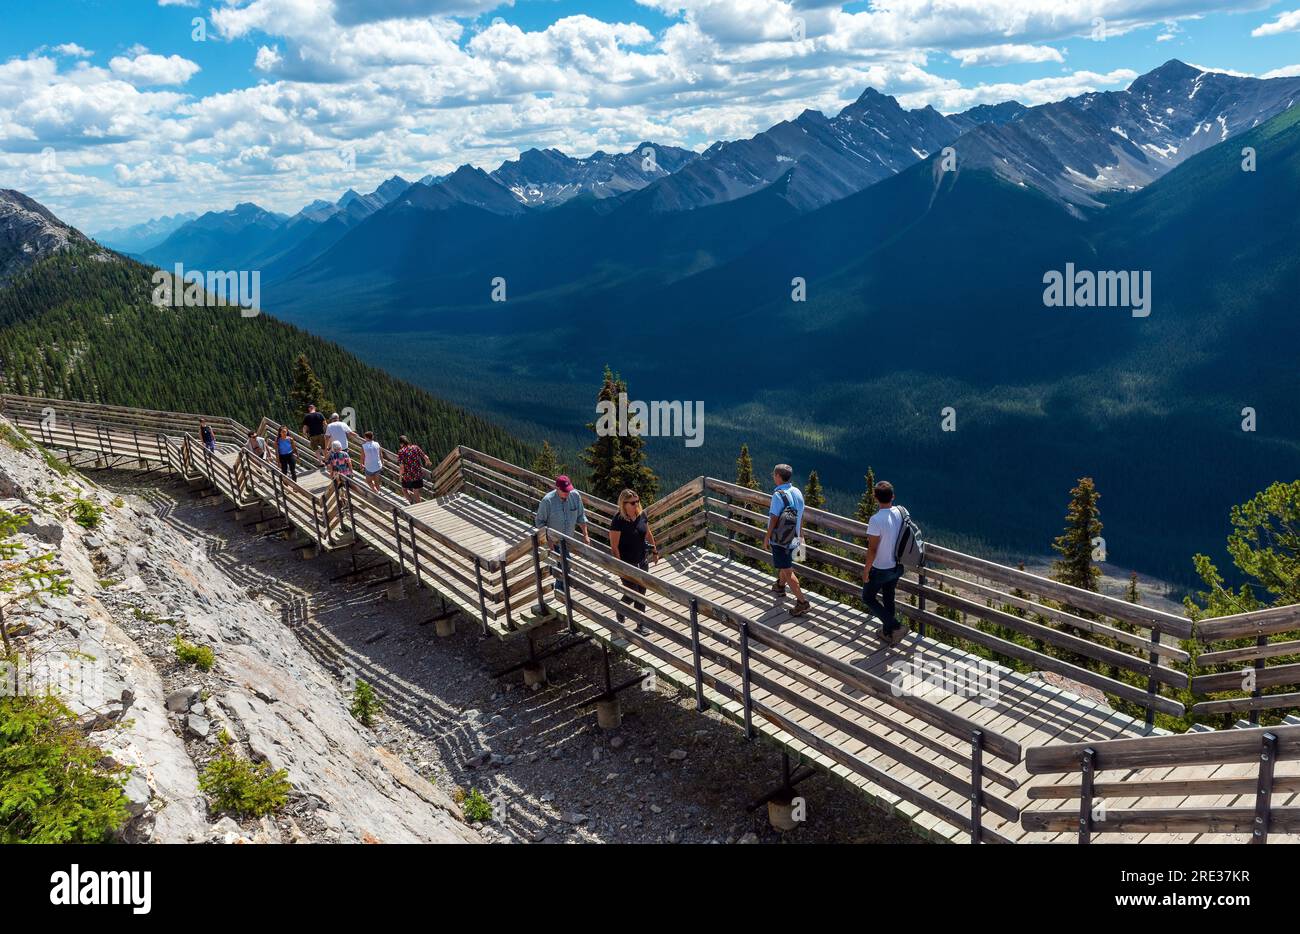 Touristen, die auf dem Sulphur Mountain wandern, wandern auf einem erhöhten Fußweg nach der Seilbahn Banff Gondola, Banff National Park, Kanada. Stockfoto